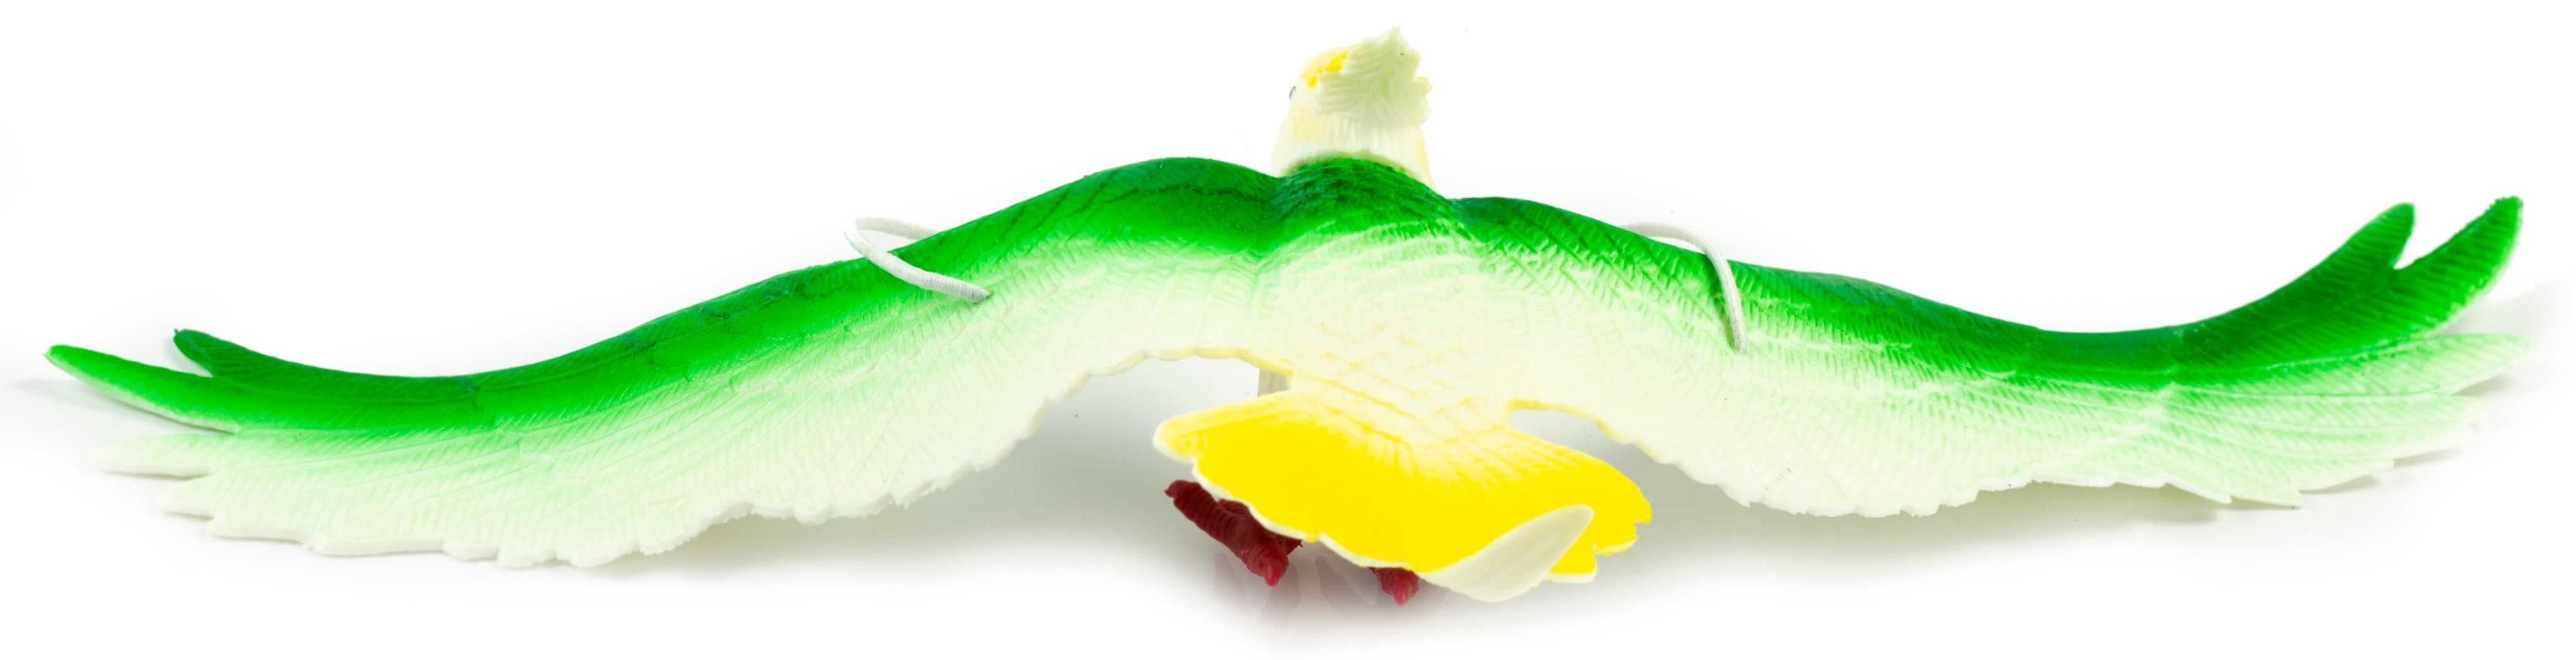 Резиновые игрушки «Птицы на резинках с пищалкой» 33 см., Н100-2W / Попугай